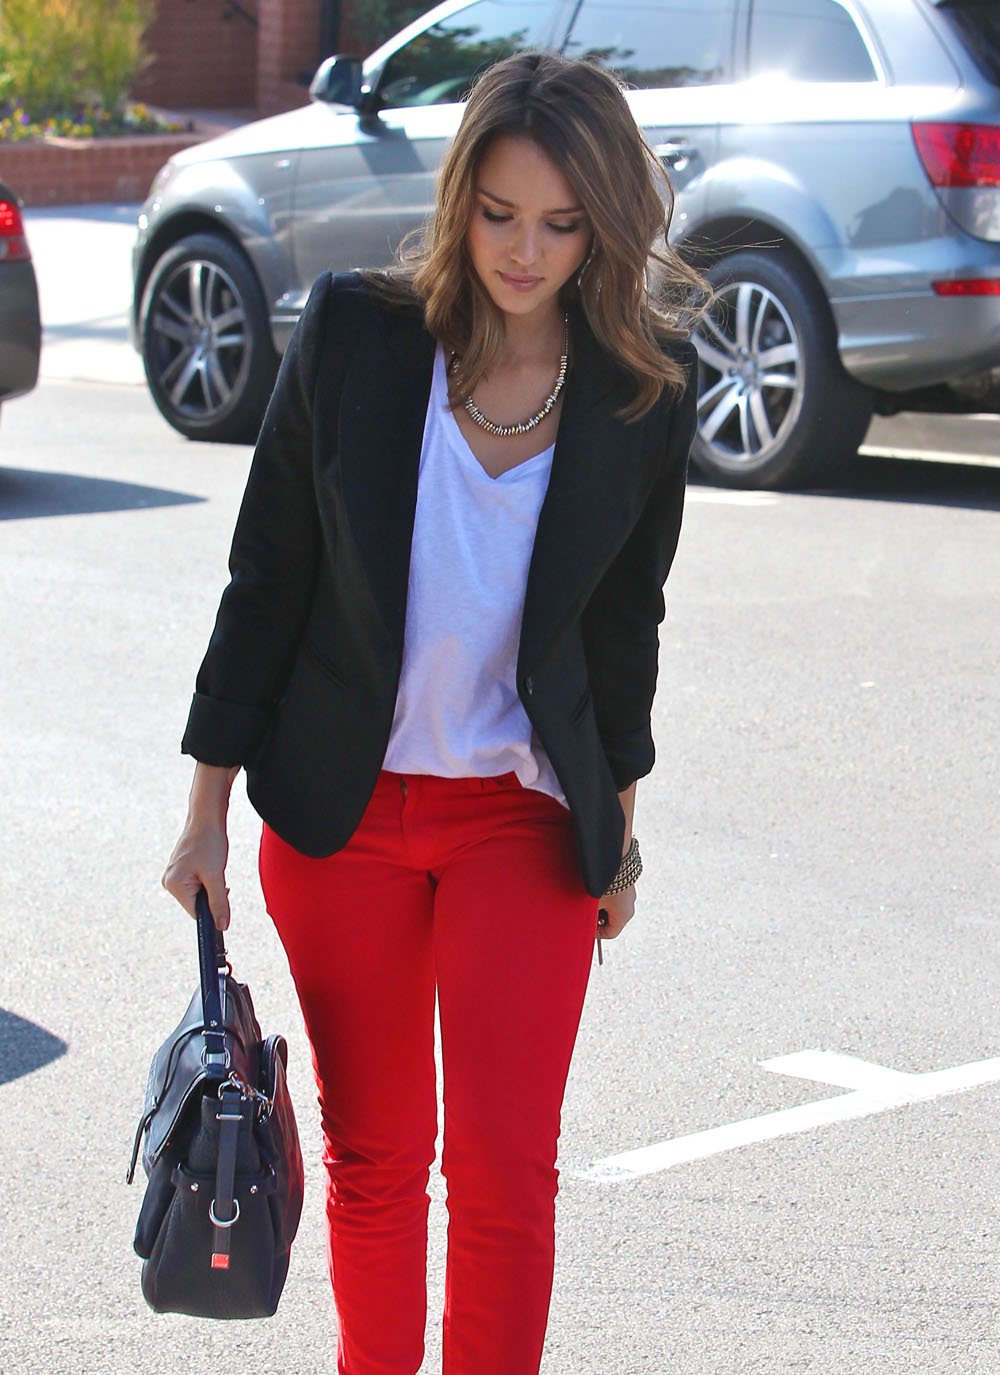 Образ в красных брюках